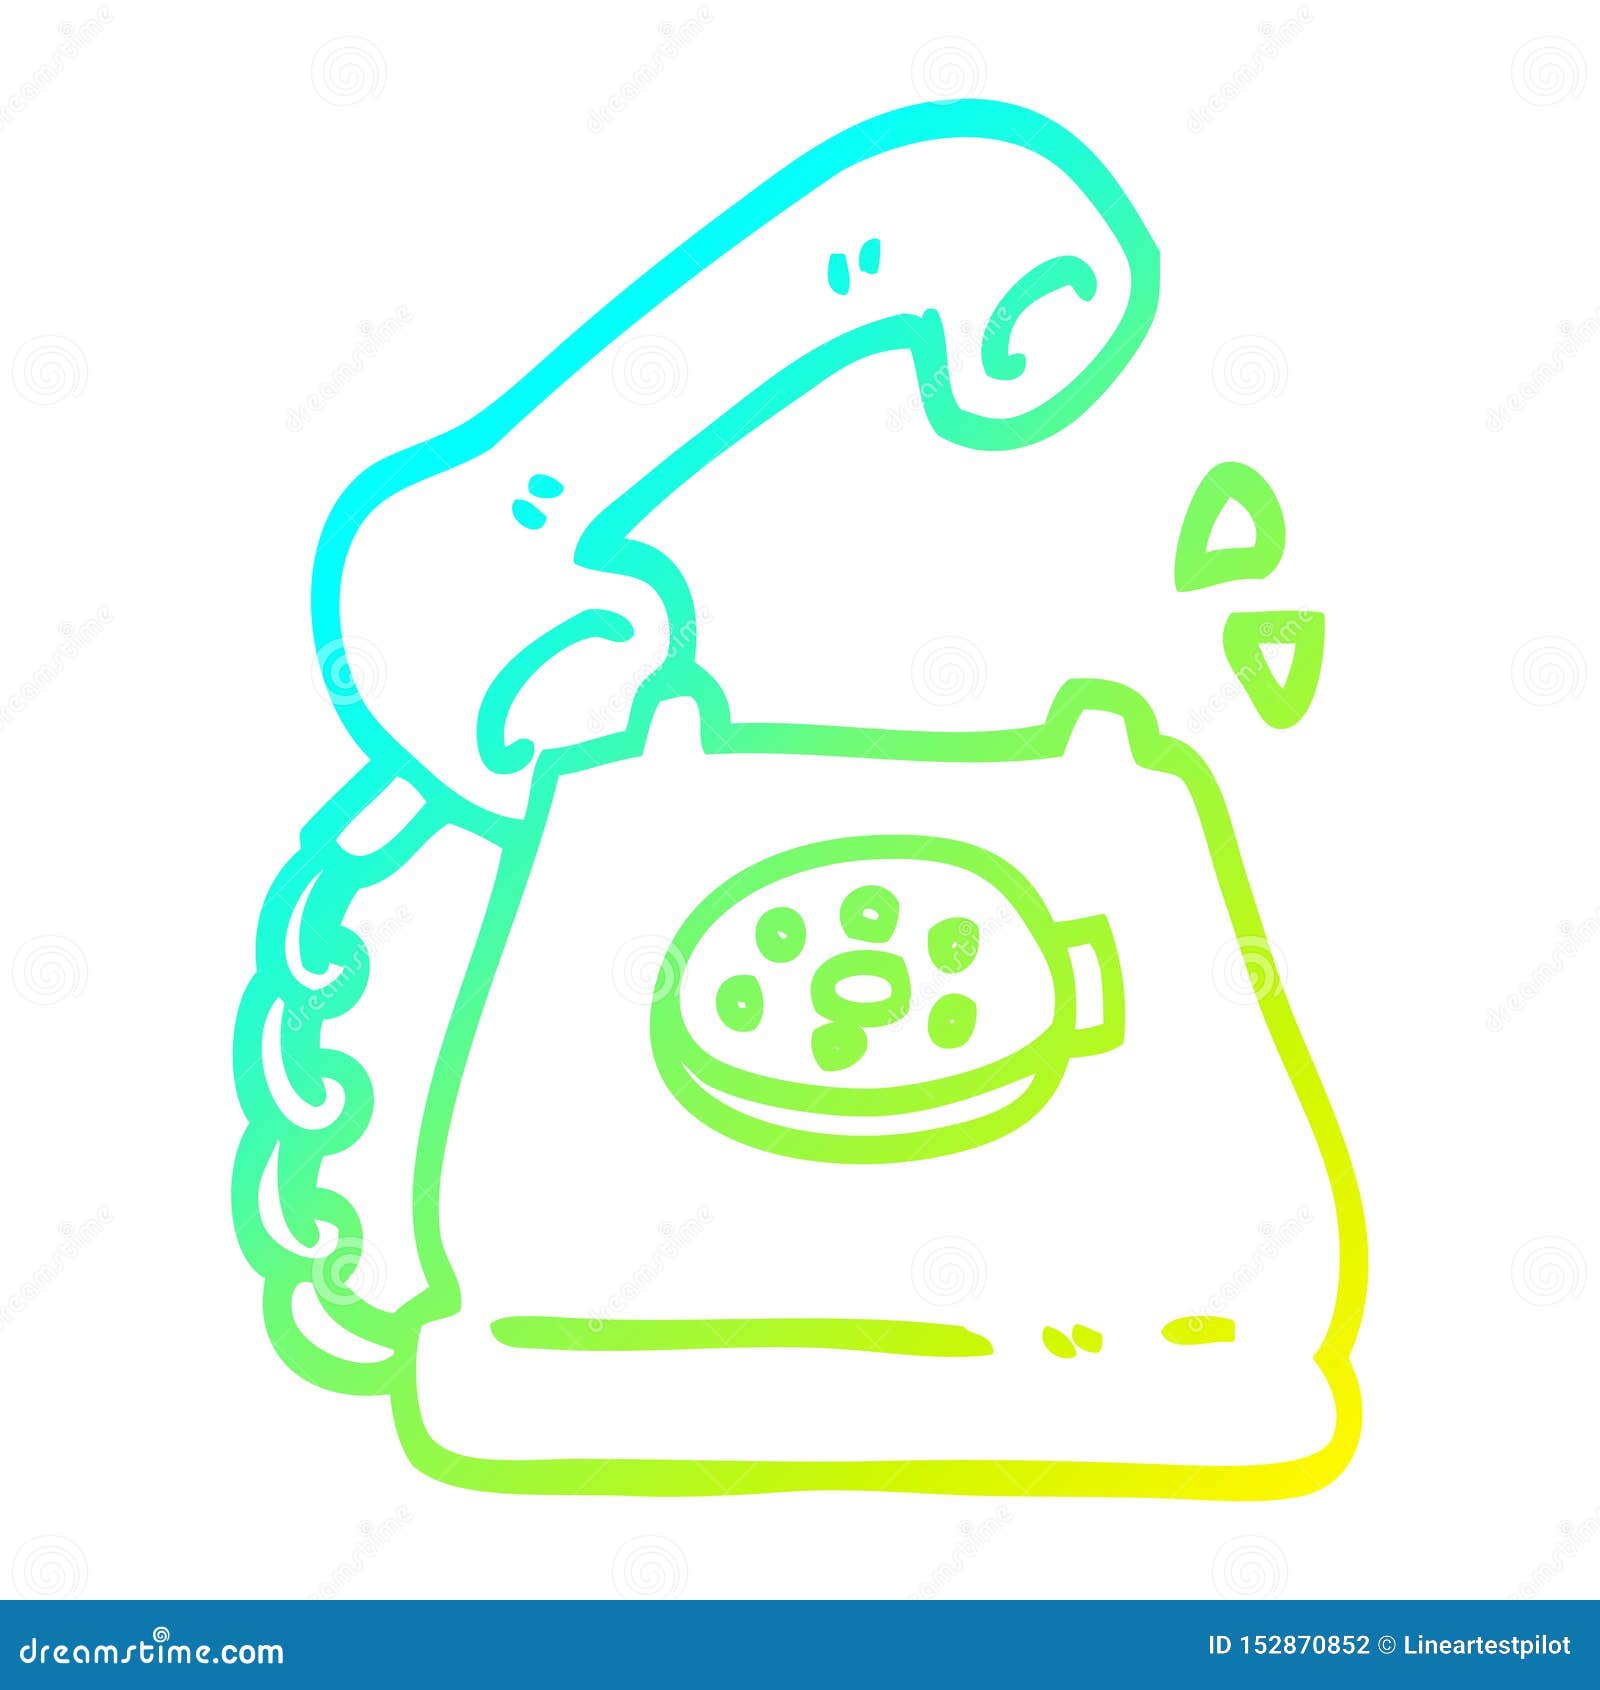 Eine Kreative Kalte Gradientenlinie Zeichnen Cartoon Telefon Klingeln Vektor Abbildung Illustration Von Hand Traditionell